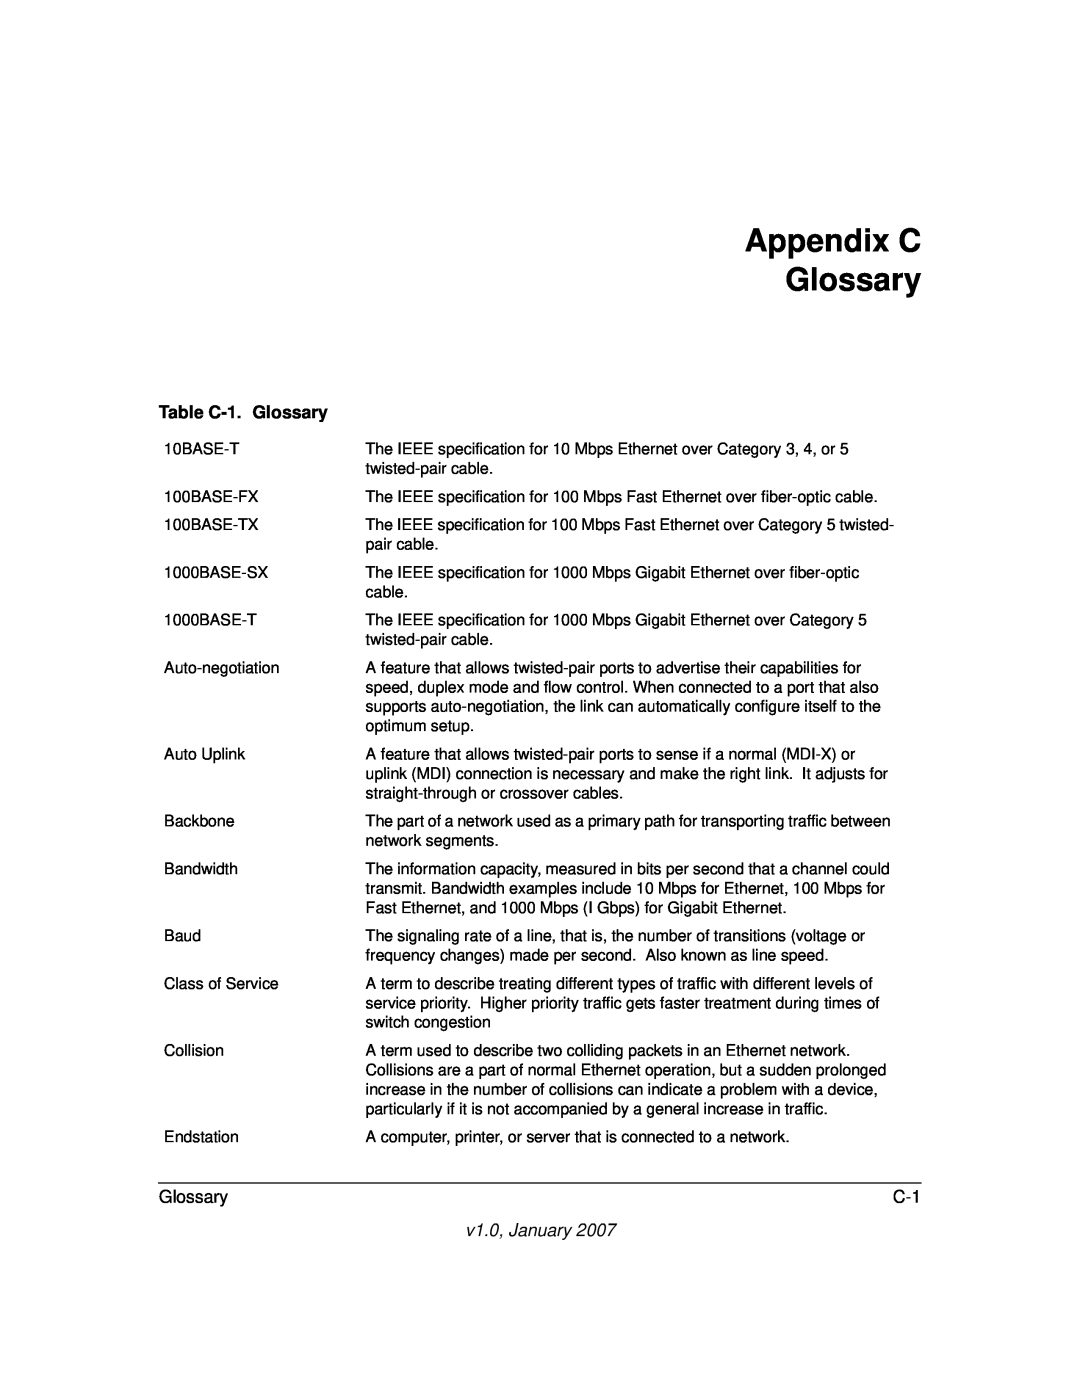 NETGEAR GS748T manual Appendix C Glossary, Table C-1. Glossary, v1.0, January 